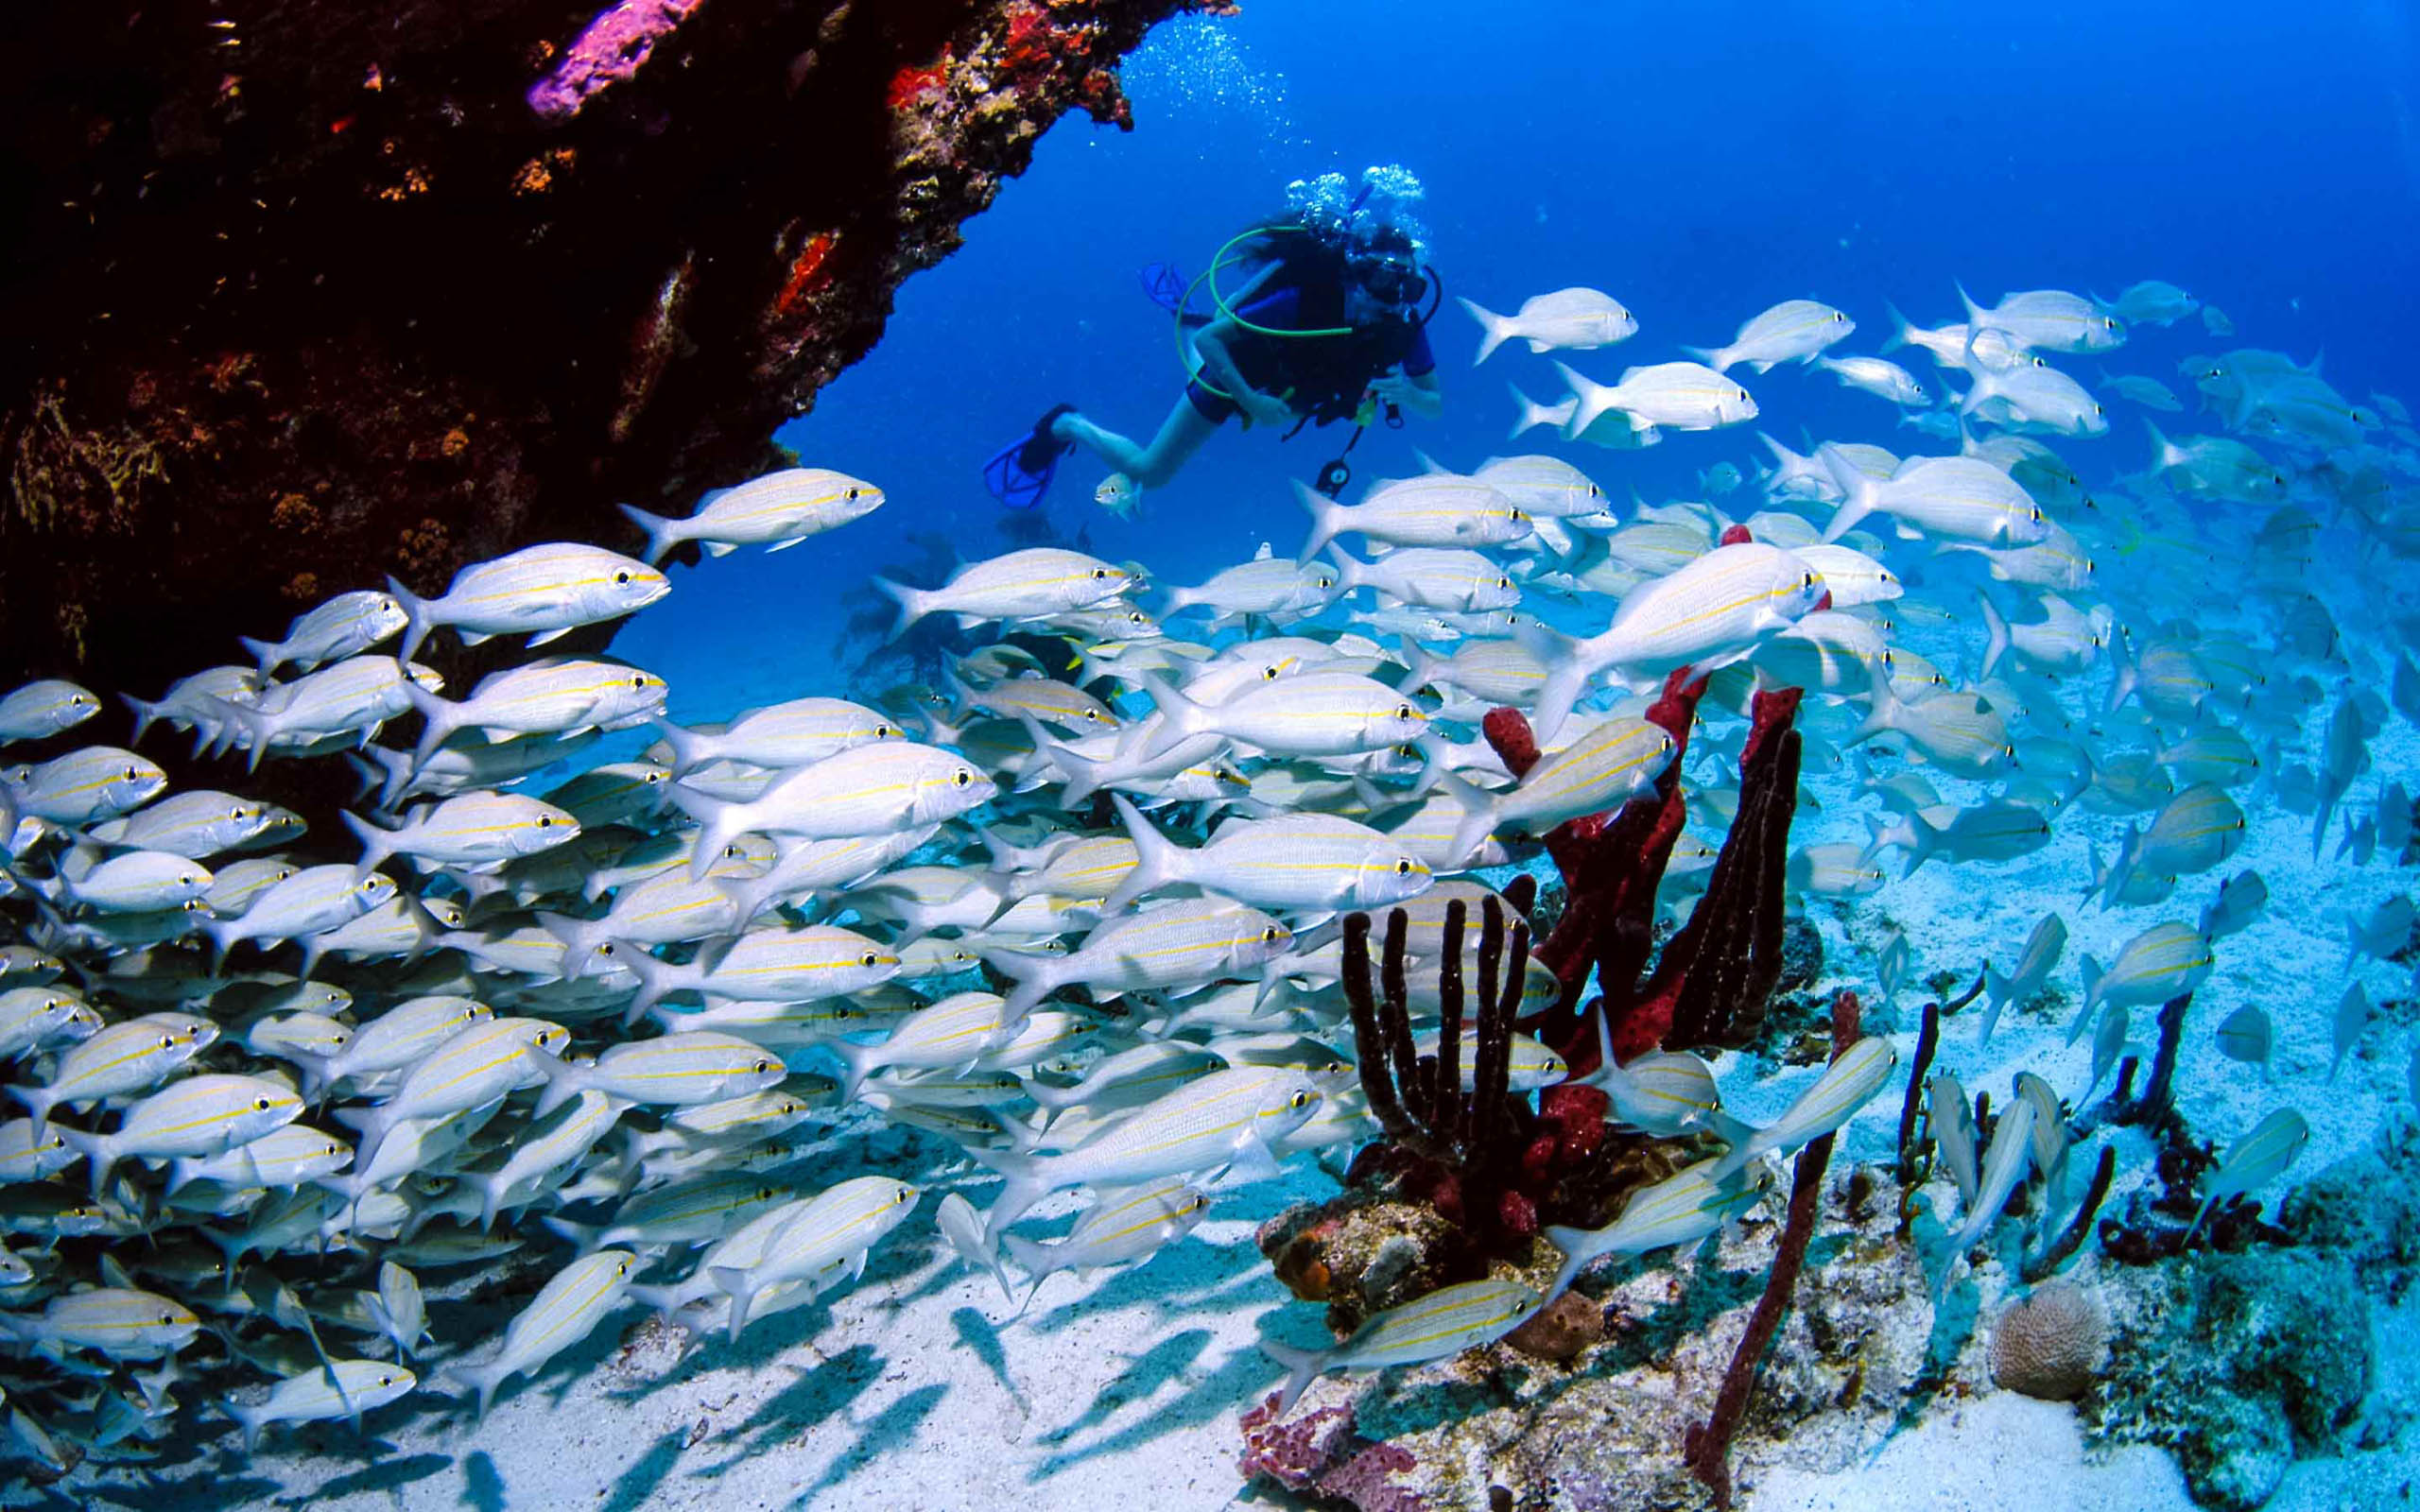 A scuba diver swims through a school of fish.